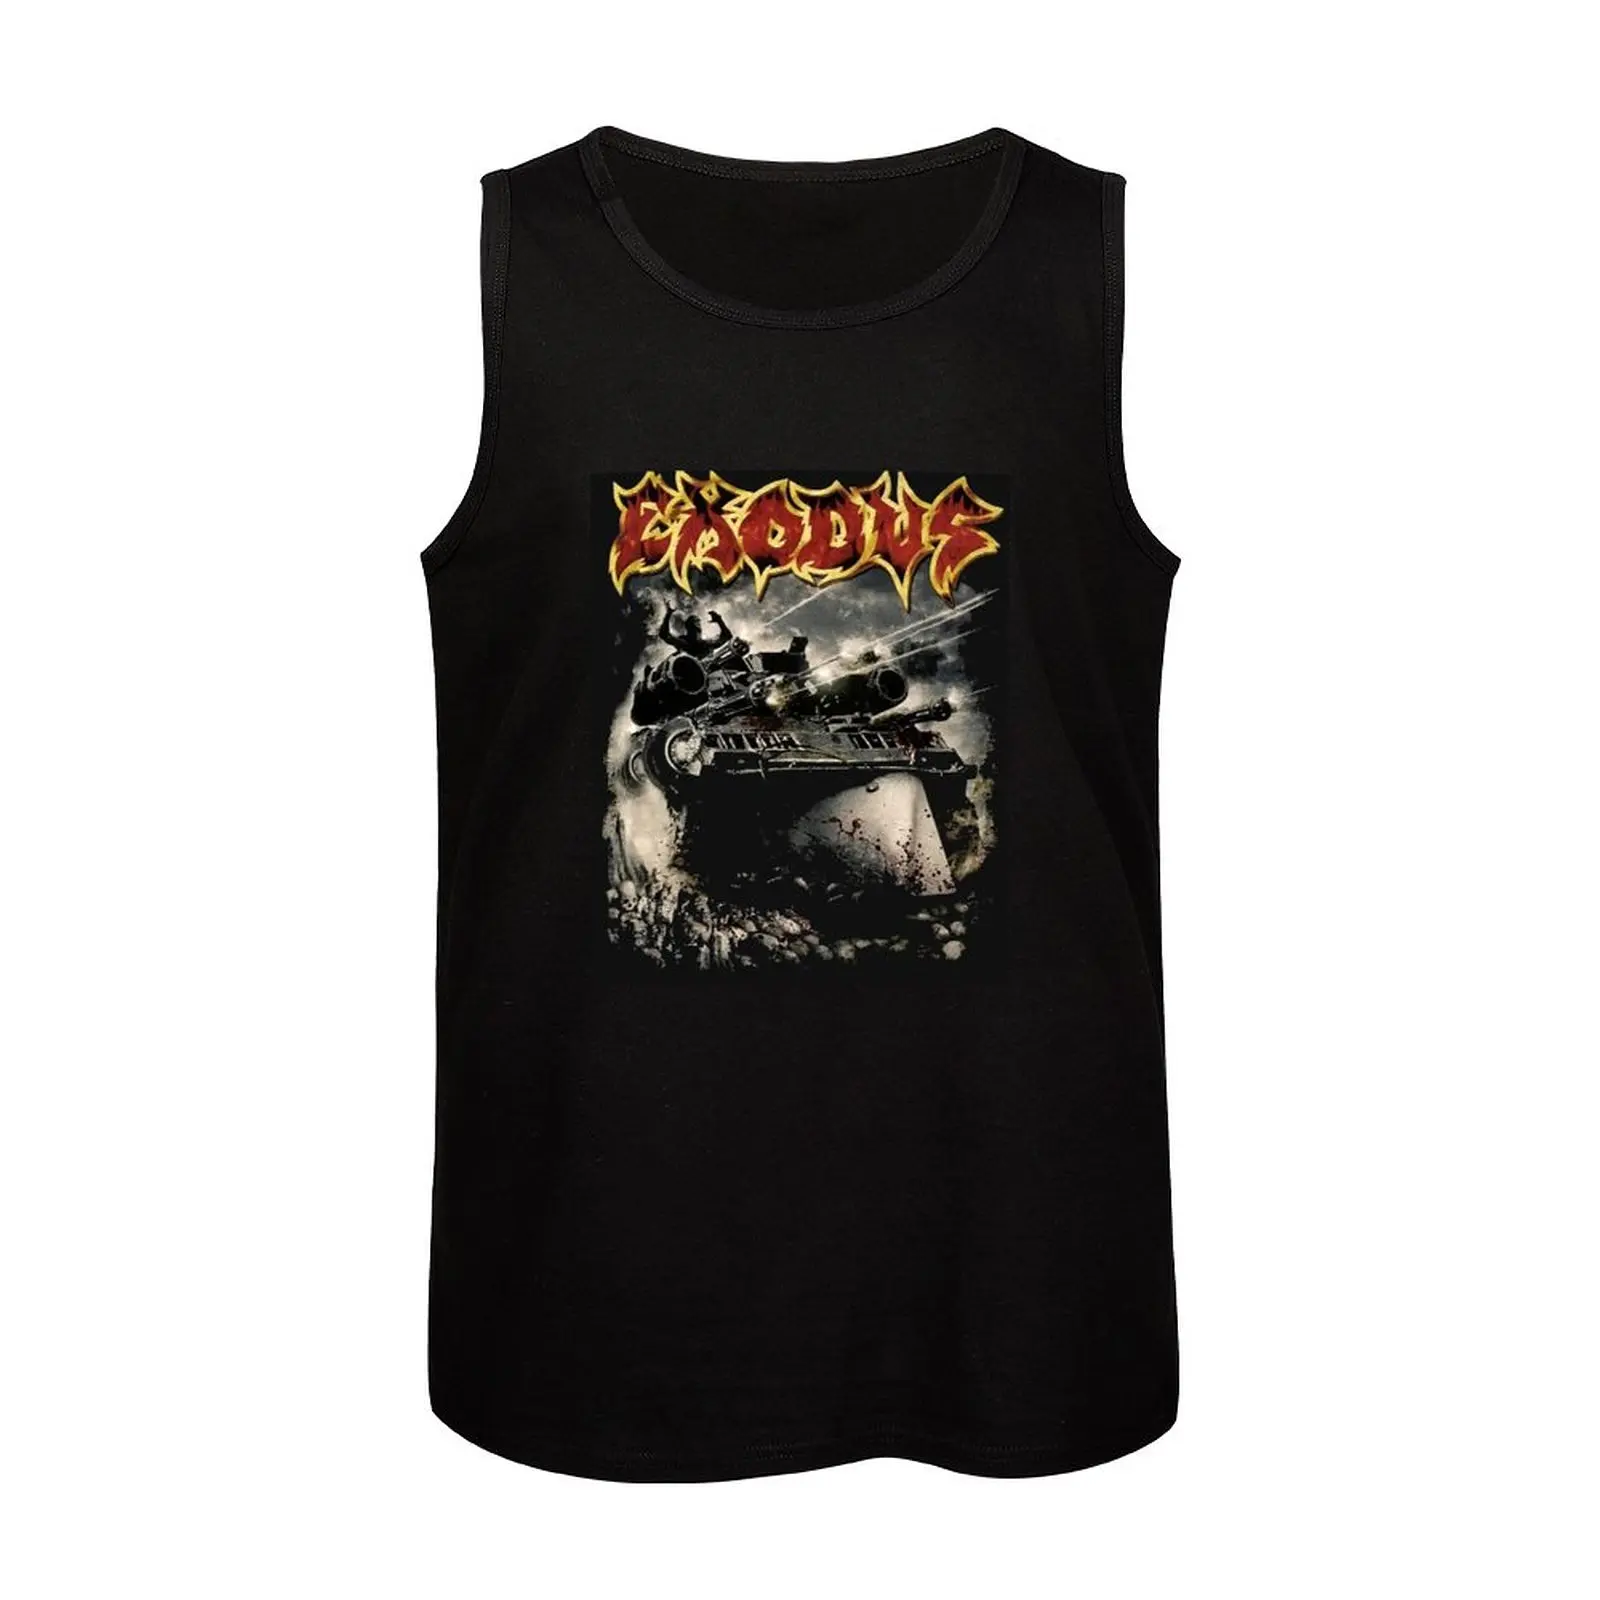 Exodus-Camiseta sin mangas para hombre, ropa deportiva de verano, novedad